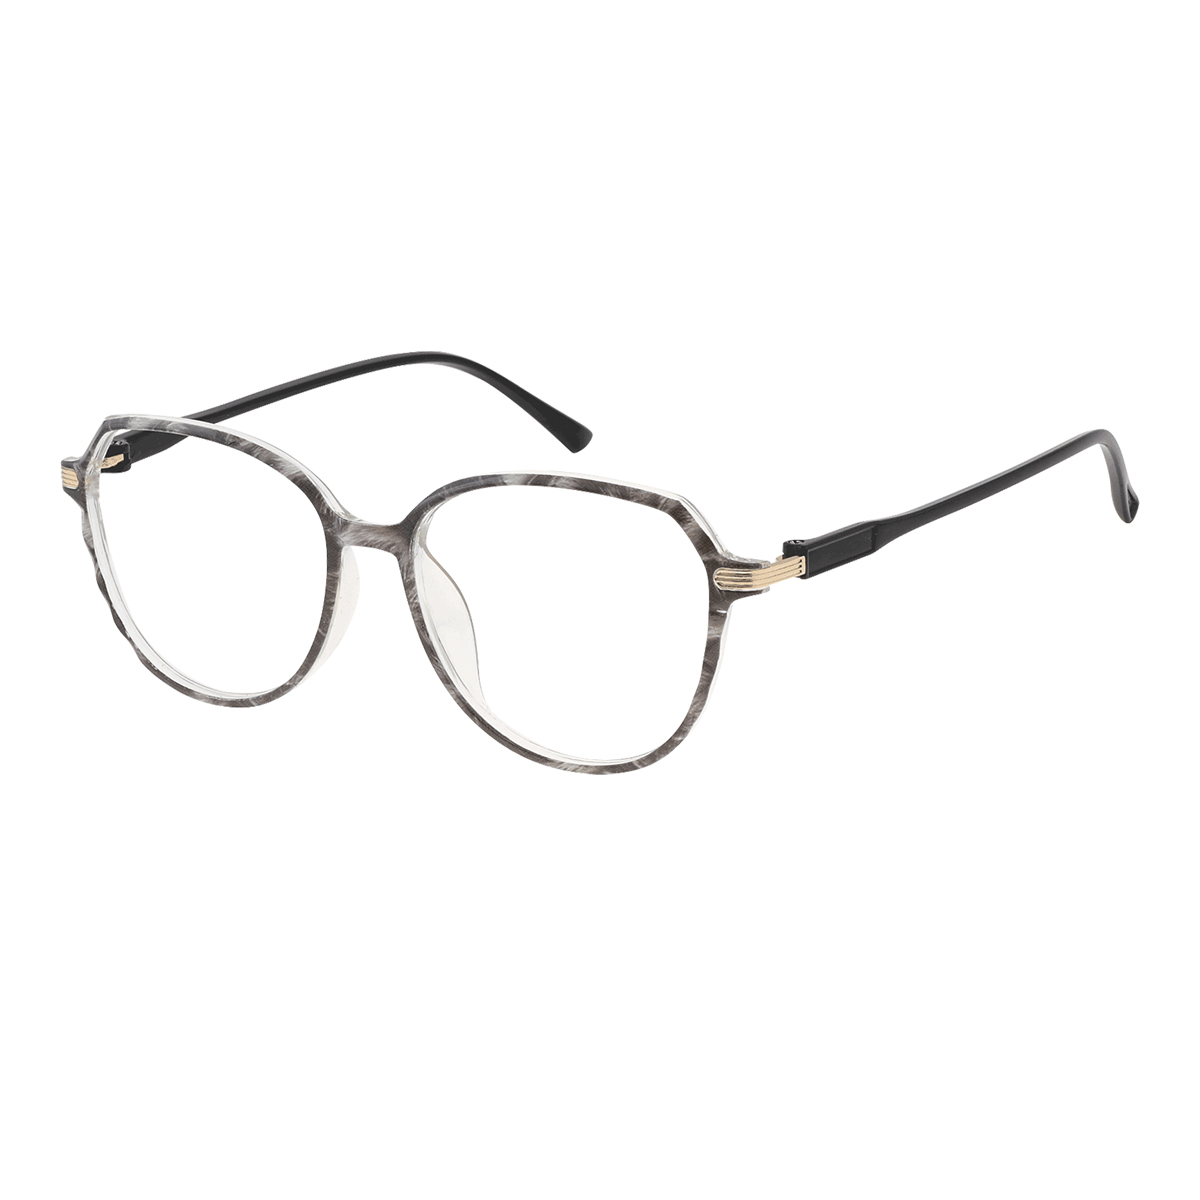 Carnea - Cat-eye Black-Gray Reading Glasses for Women